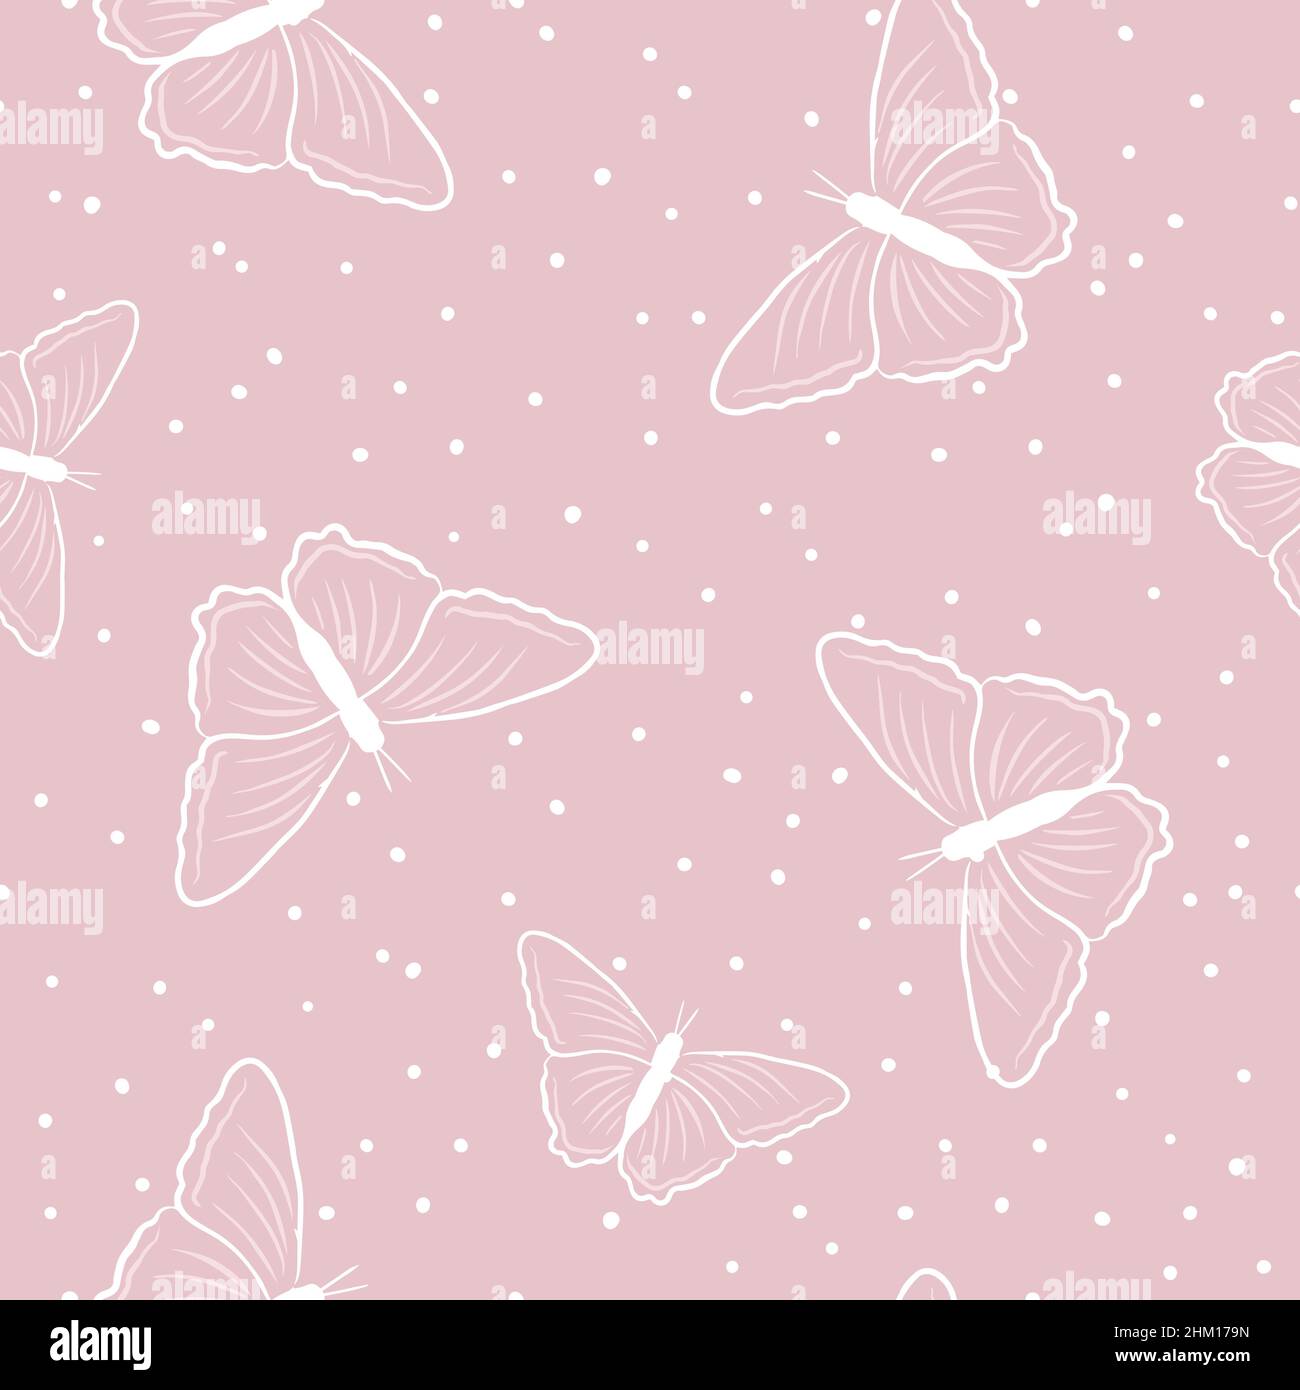 Modello a farfalla senza cuciture in stile doodles su sfondo rosa. Illustrazione vettoriale delle farfalle per il vostro disegno. Illustrazione Vettoriale